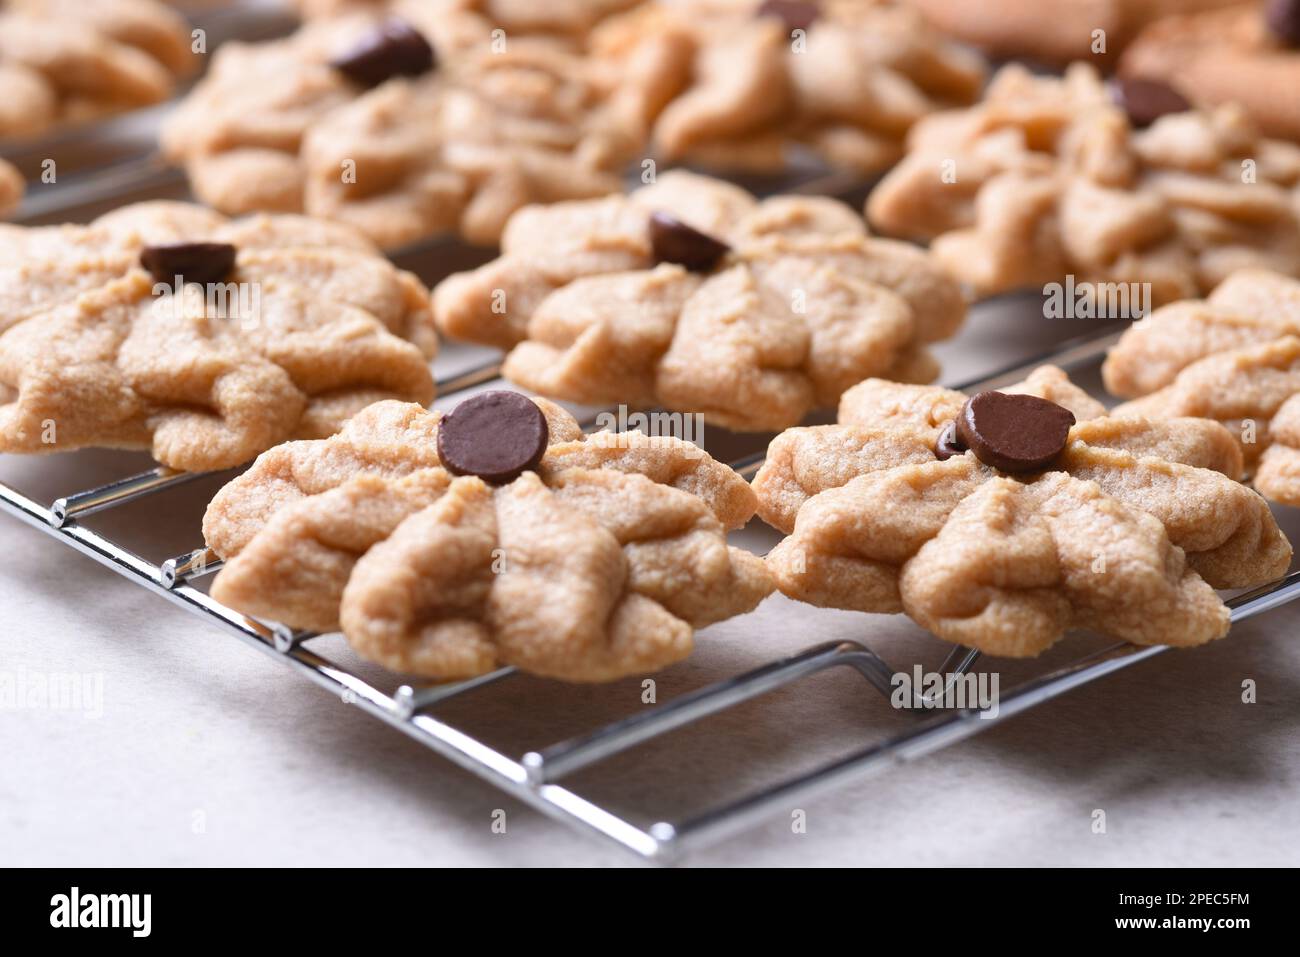 Gros plan des biscuits au sucre avec une pastille de chocolat sur le dessus reposant sur une grille de refroidissement. Banque D'Images